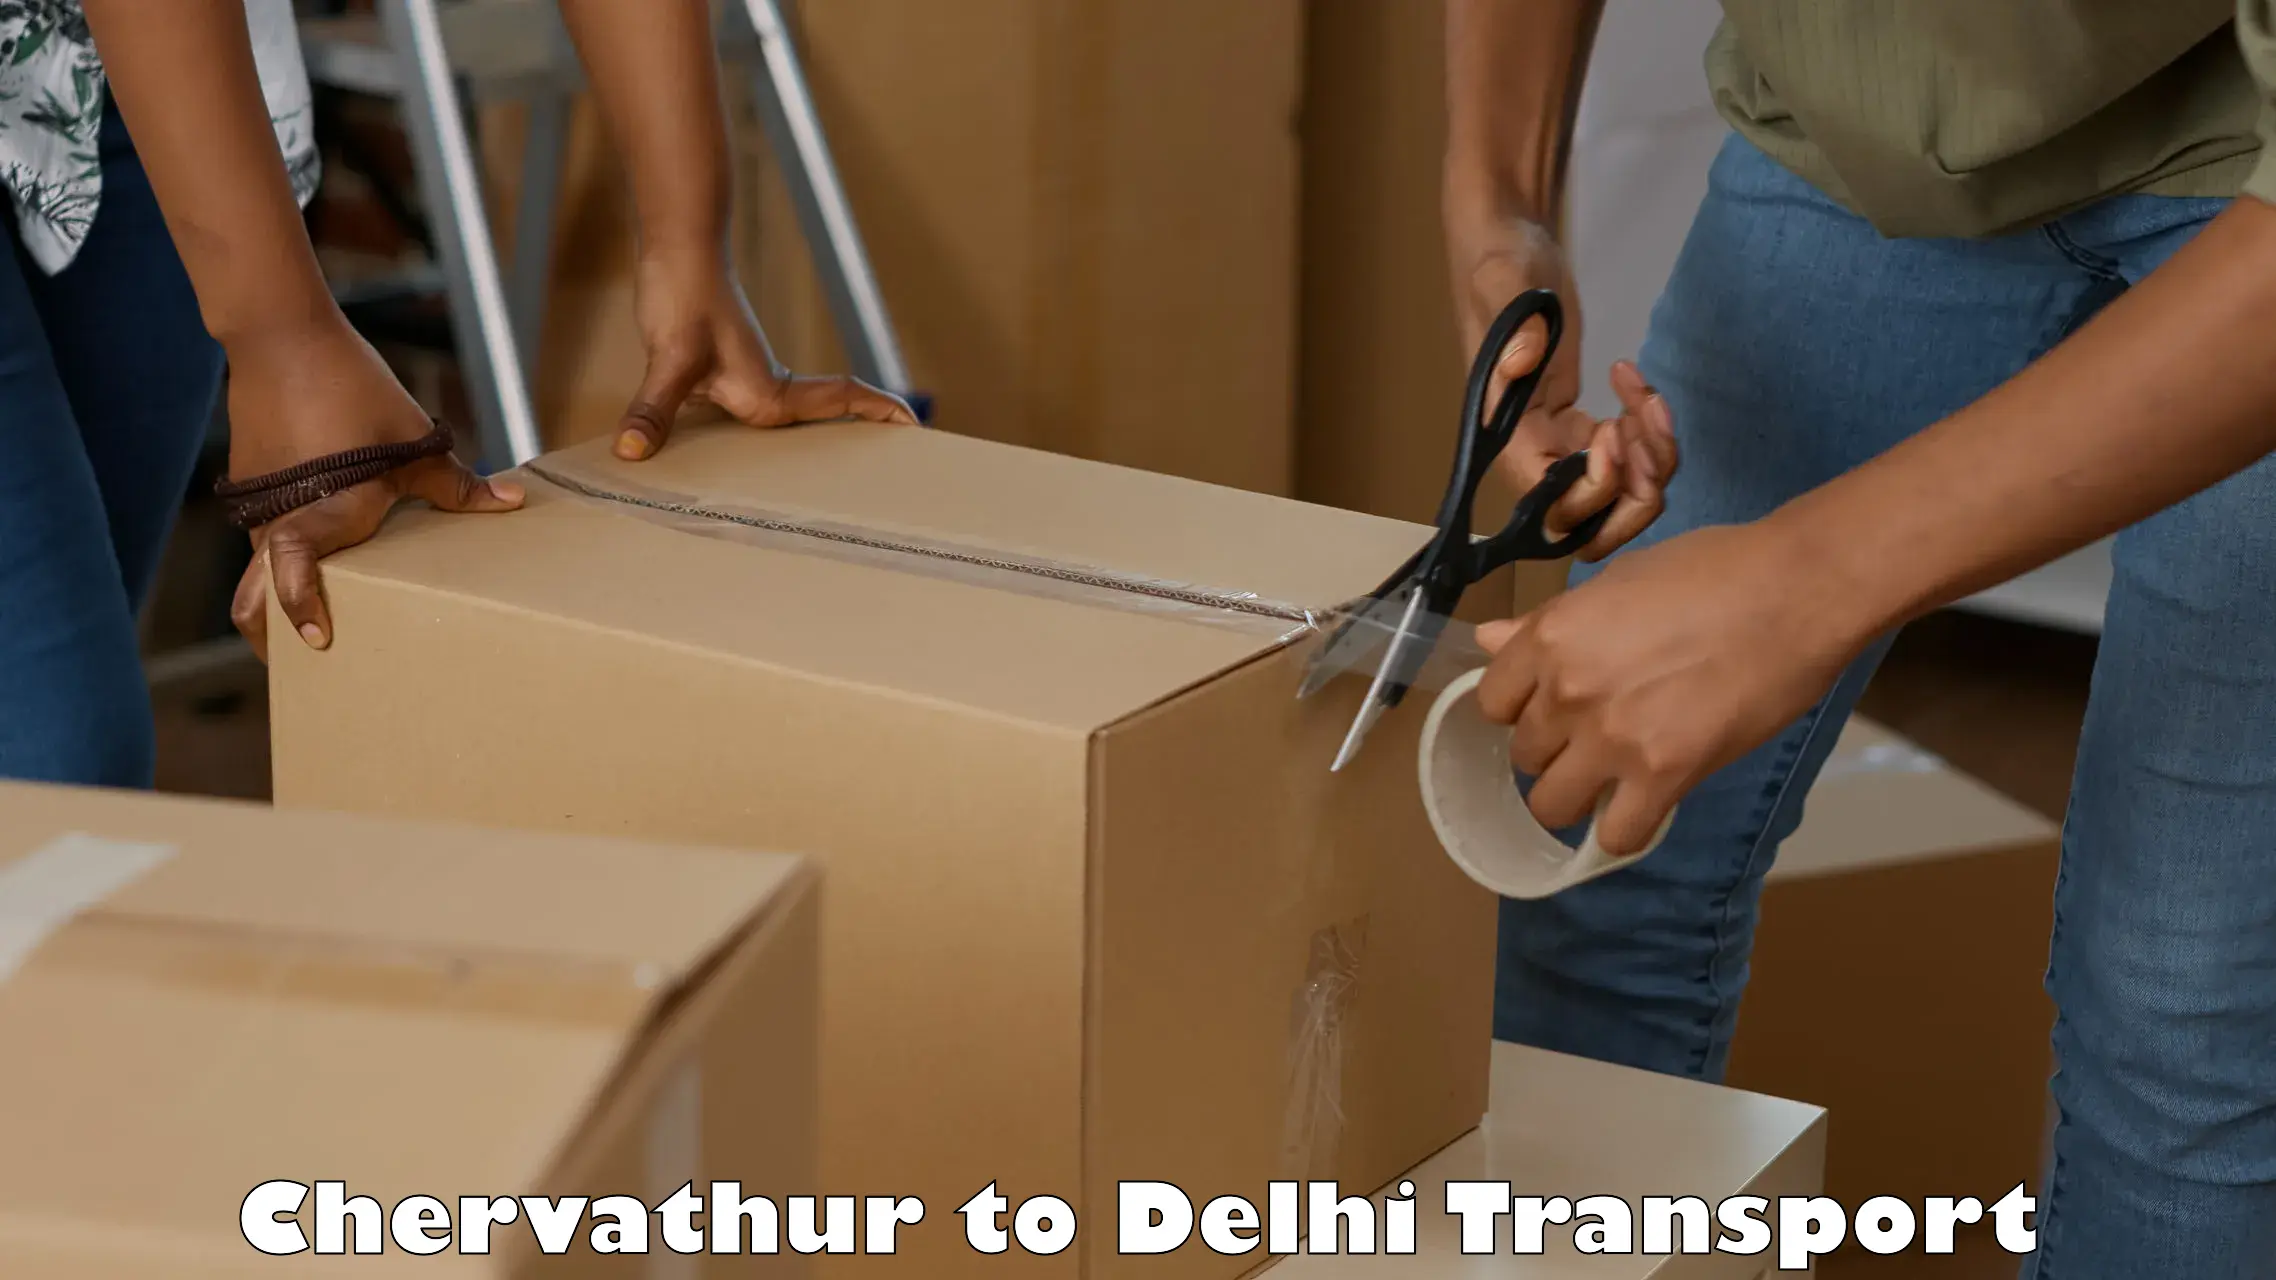 Land transport services Chervathur to Jamia Millia Islamia New Delhi